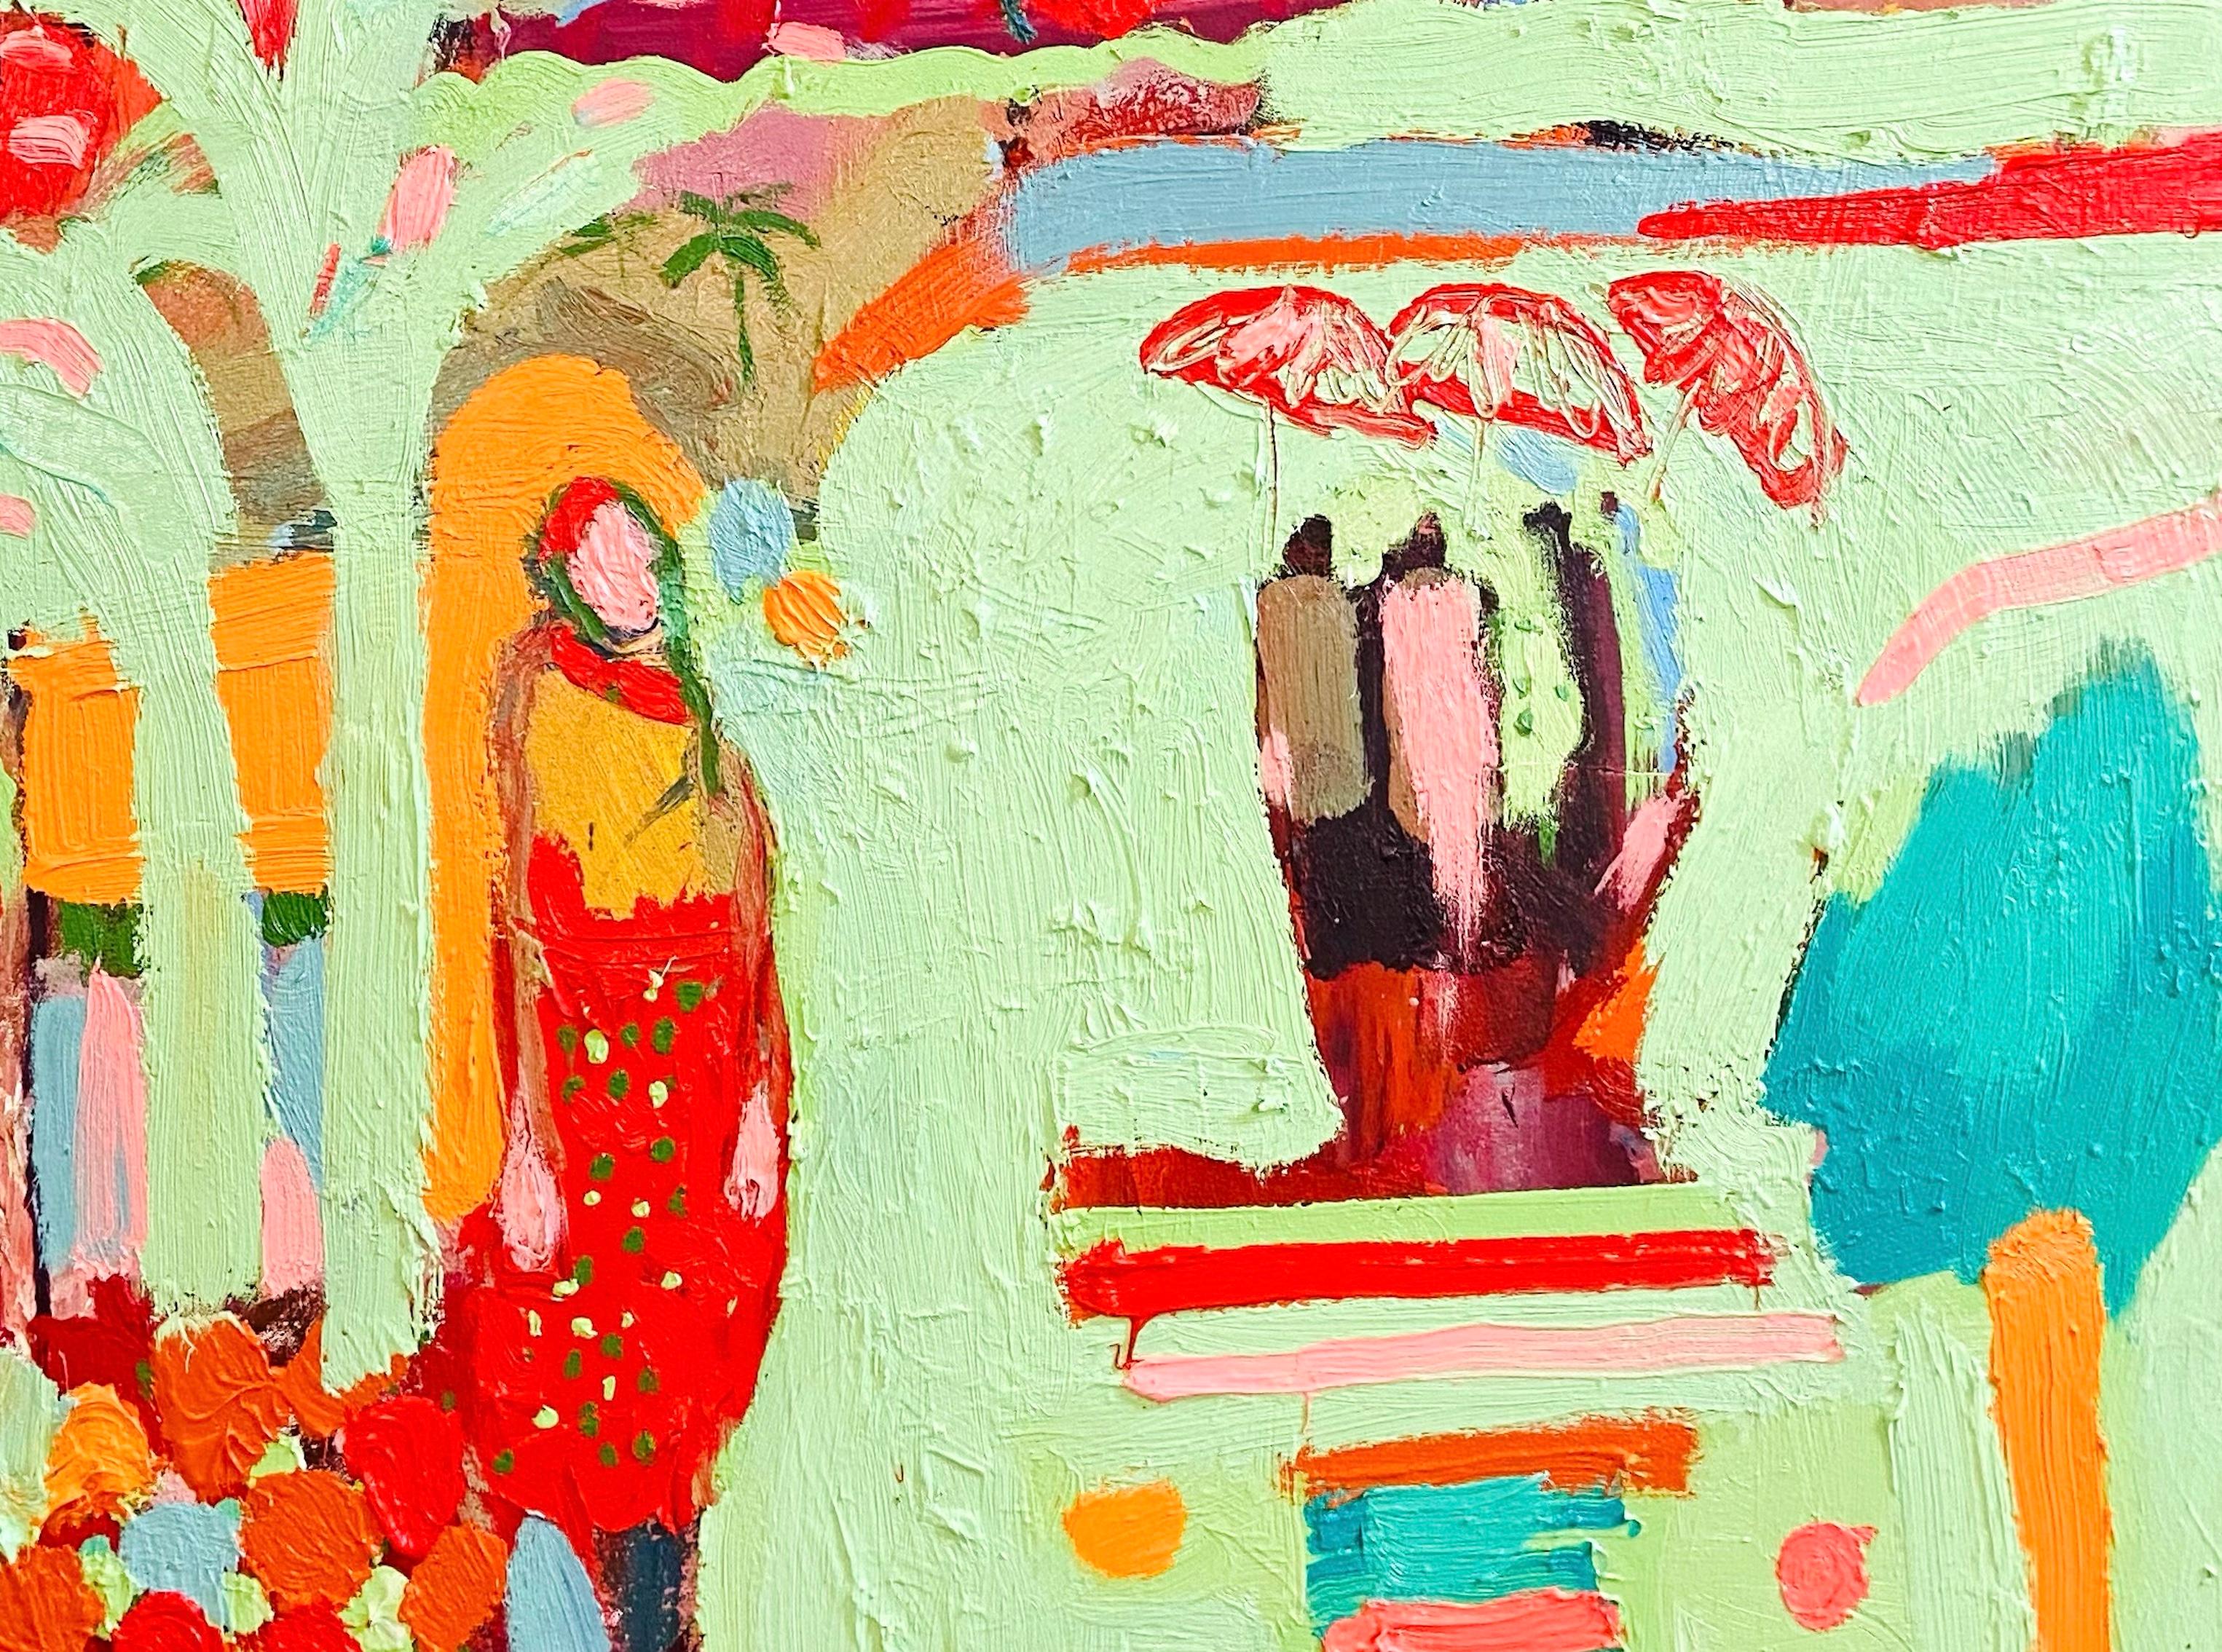 Wüste Regenschirme:   Zeitgenössisches expressionistisches figuratives Ölgemälde – Painting von Paul wadsworth